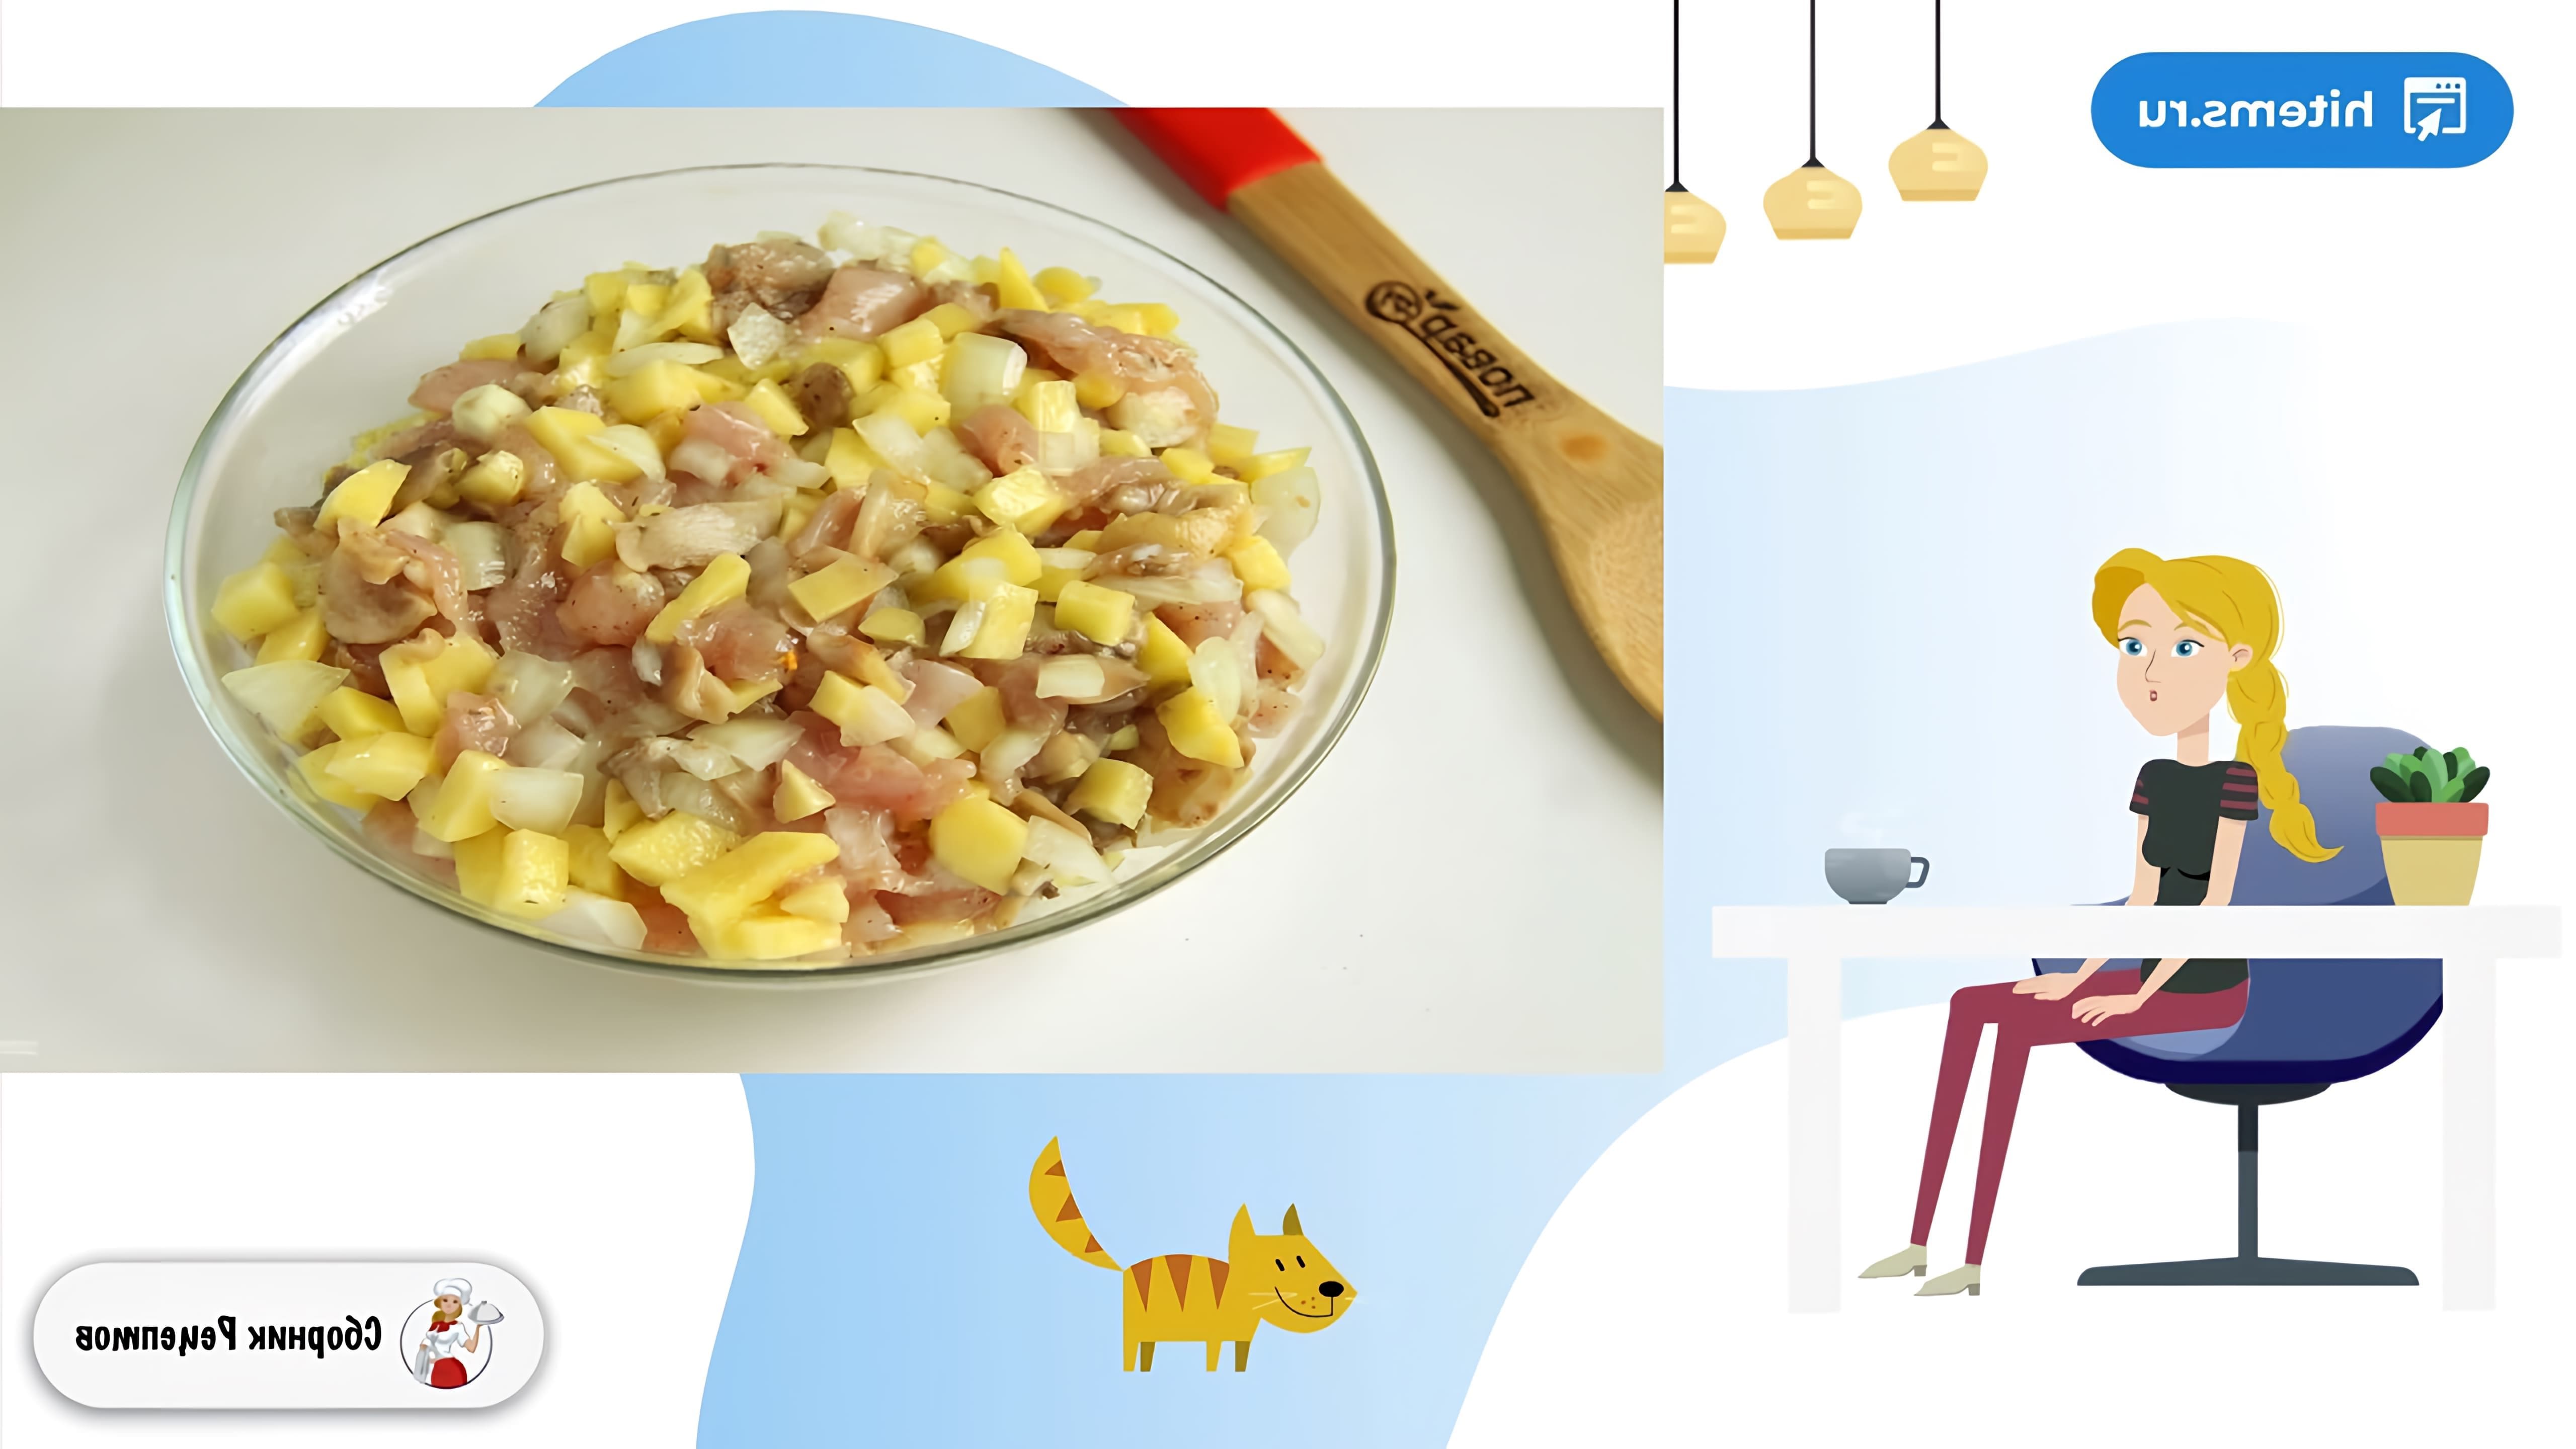 В данном видео демонстрируется рецепт приготовления пирога с картошкой, грибами и курицей